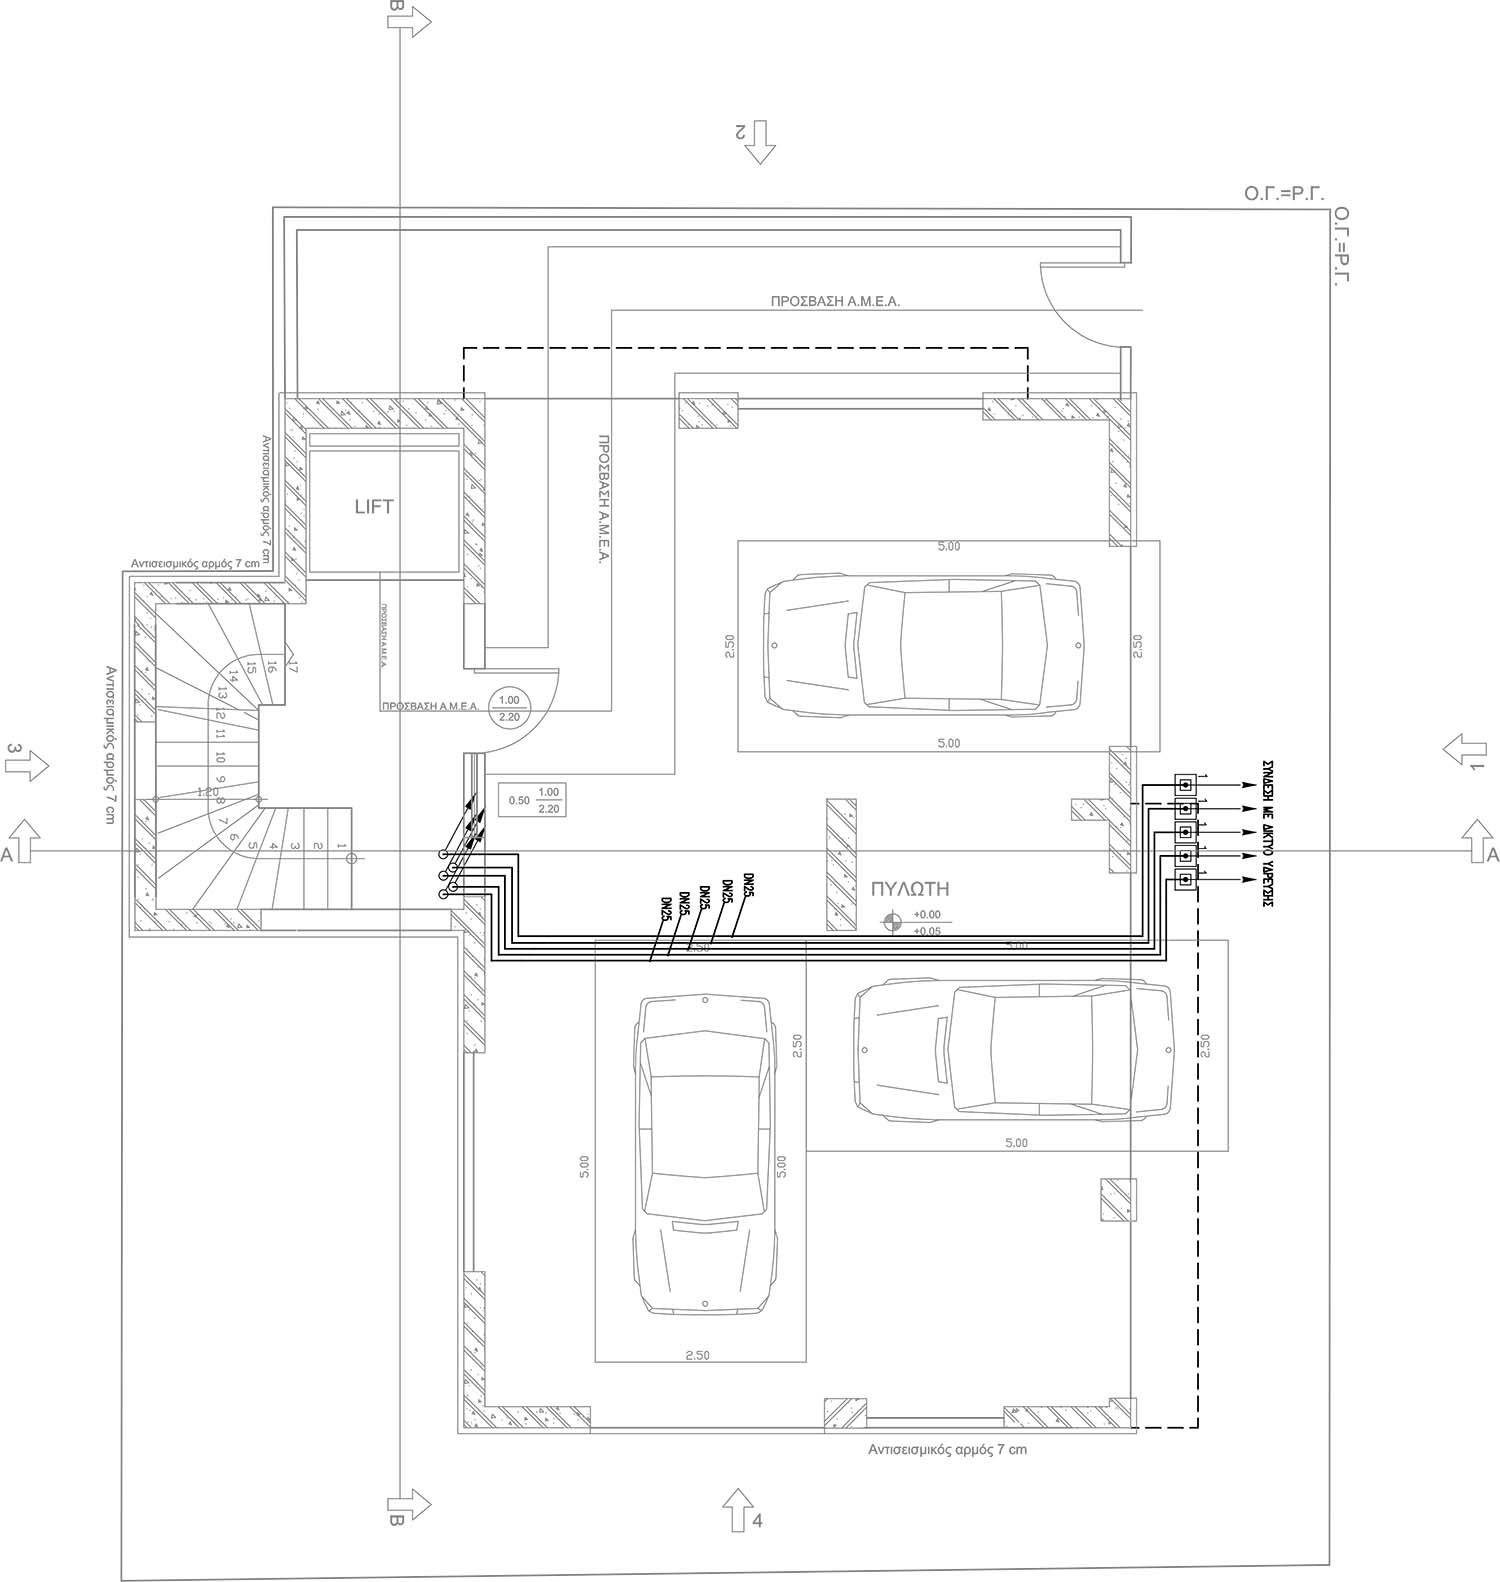 Σχέδιο ύδρευσης κάτοψης ισογείου πολυκατοικίας από τον ηλεκτρολόγο μηχανικό Νικολαΐδη Παναγιώτη